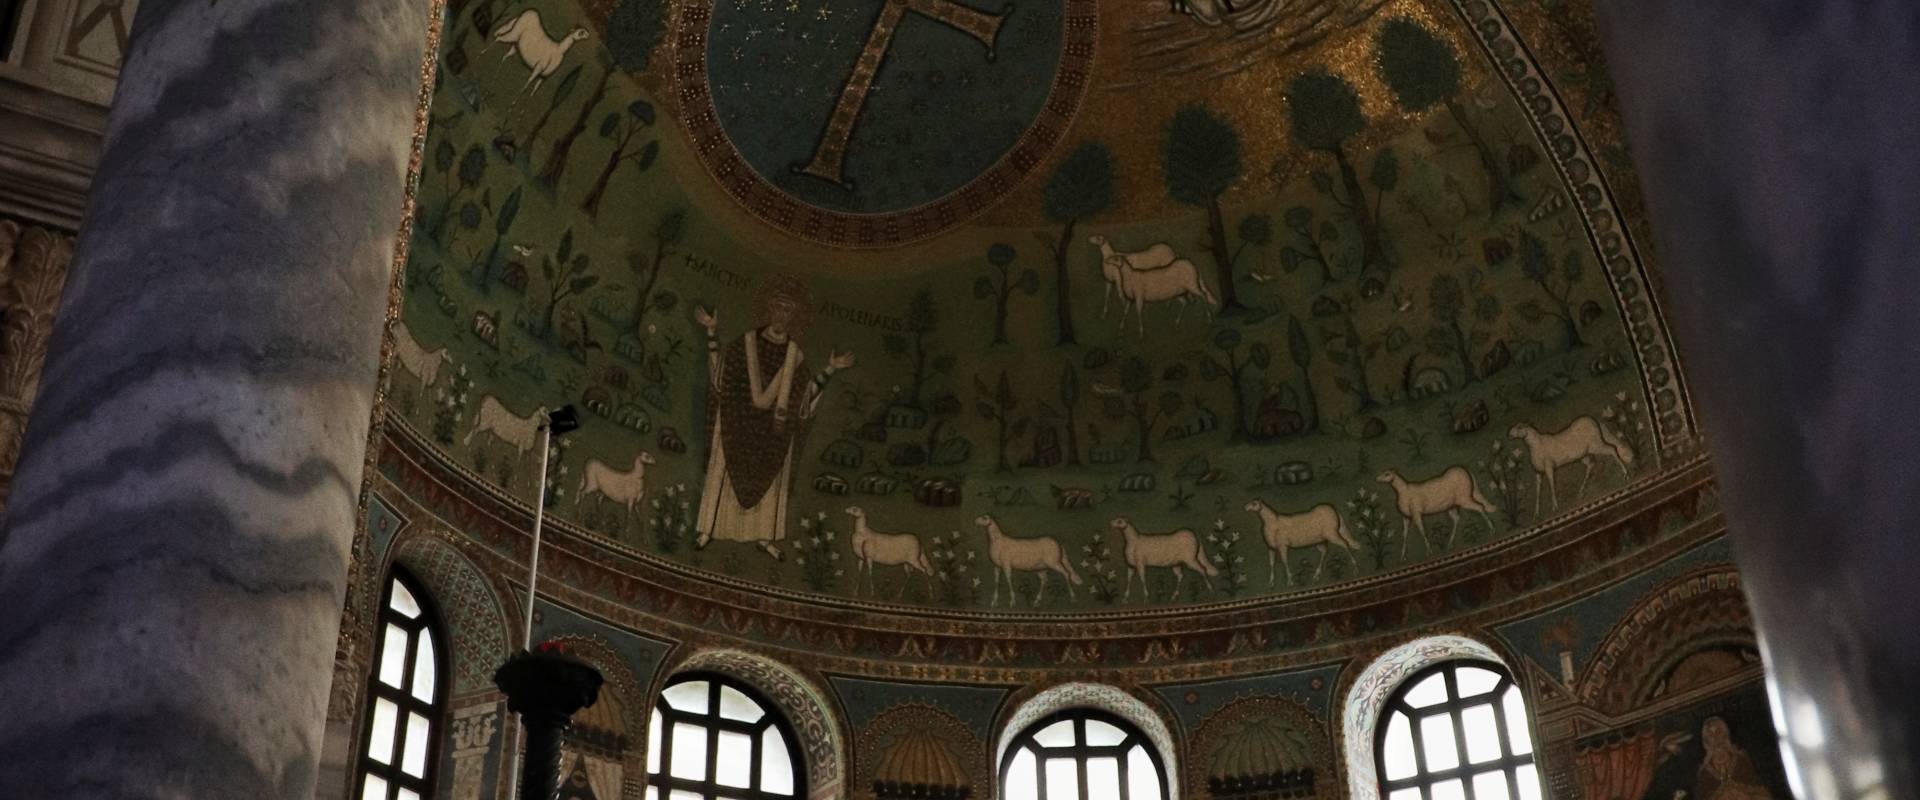 Basilica di Sant'Apollinare in Classe, Ravenna (interno, abside) foto di Stefano Casano